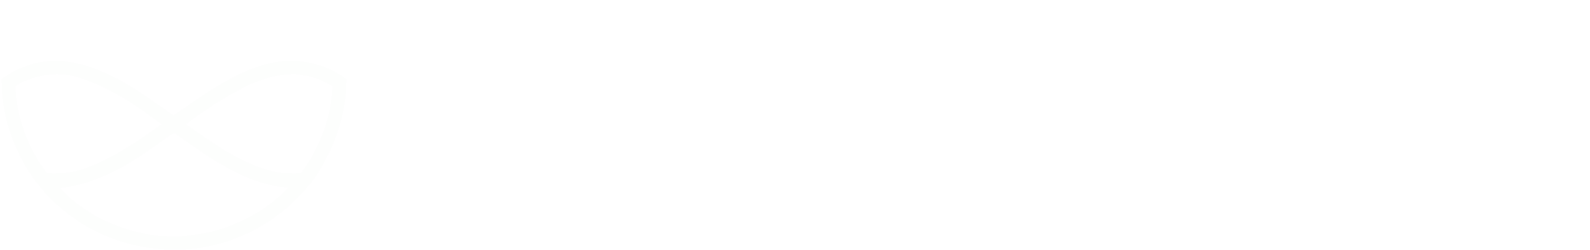 Nuwellis logo large for dark backgrounds (transparent PNG)